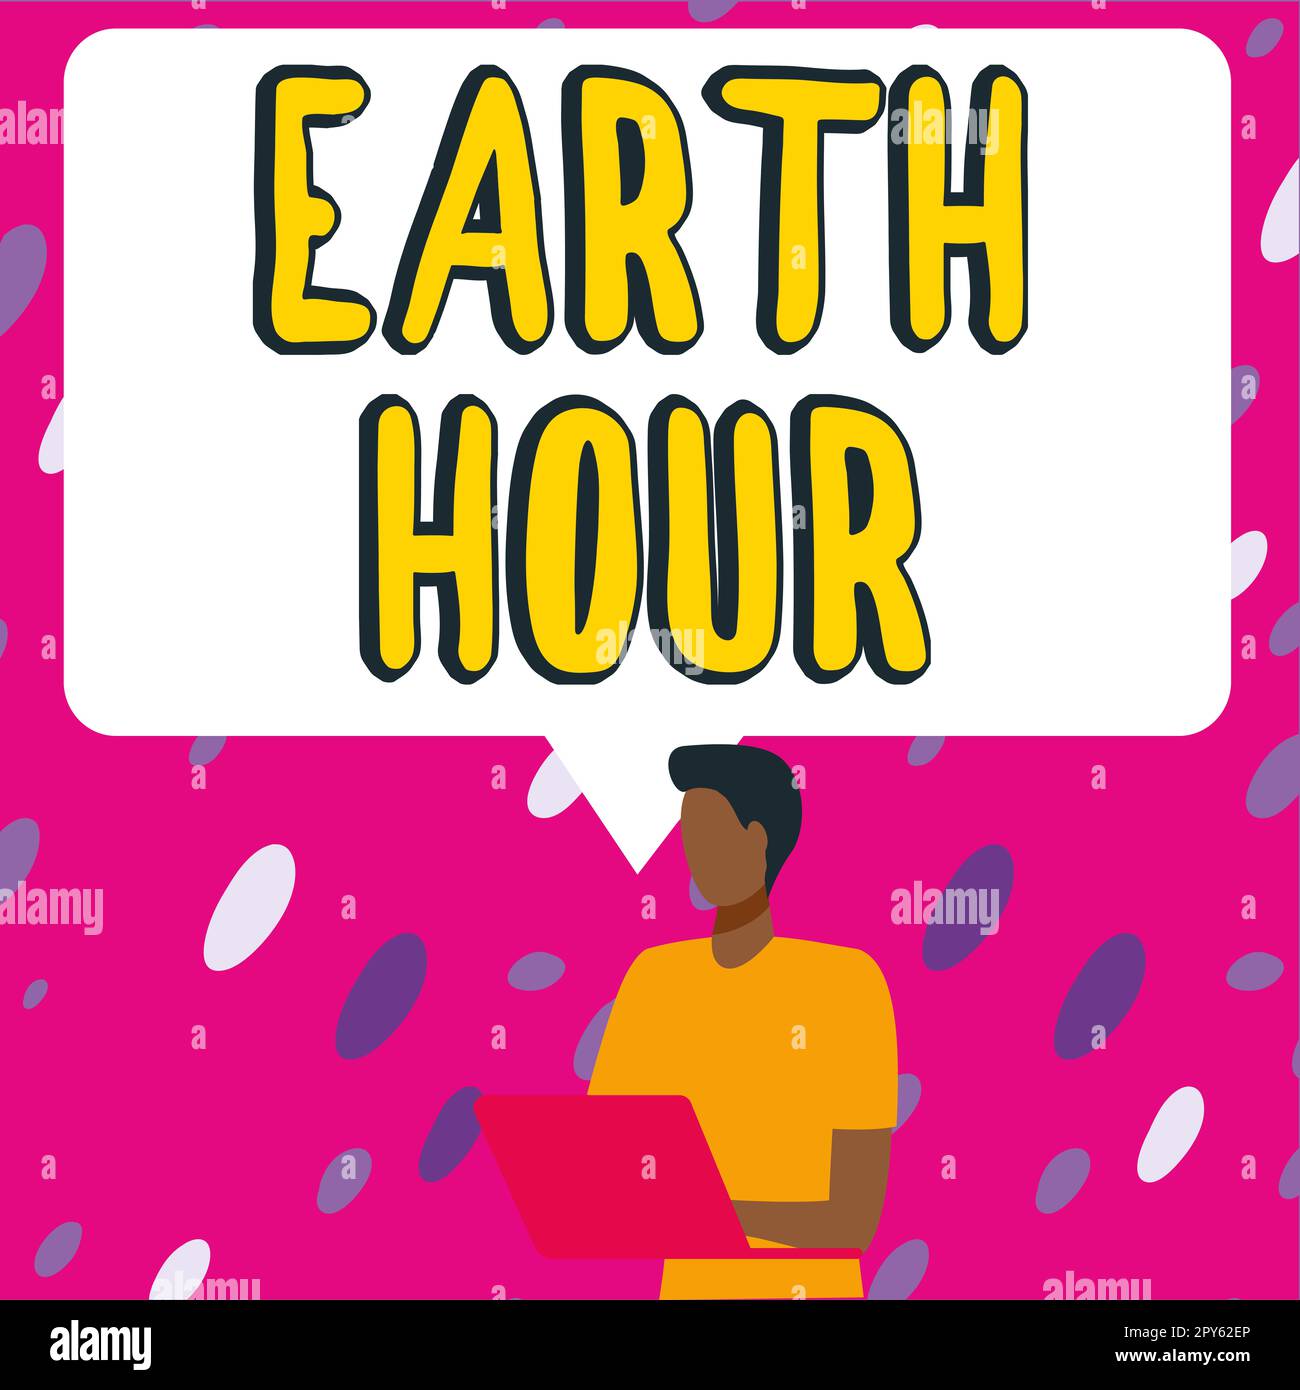 Die Inspiration zeigt das Schild Earth Hour. Word for Global movement to Call for more Action on Climate change (Wort für globale Bewegung, die mehr Maßnahmen gegen den Klimawandel fordert) Stockfoto